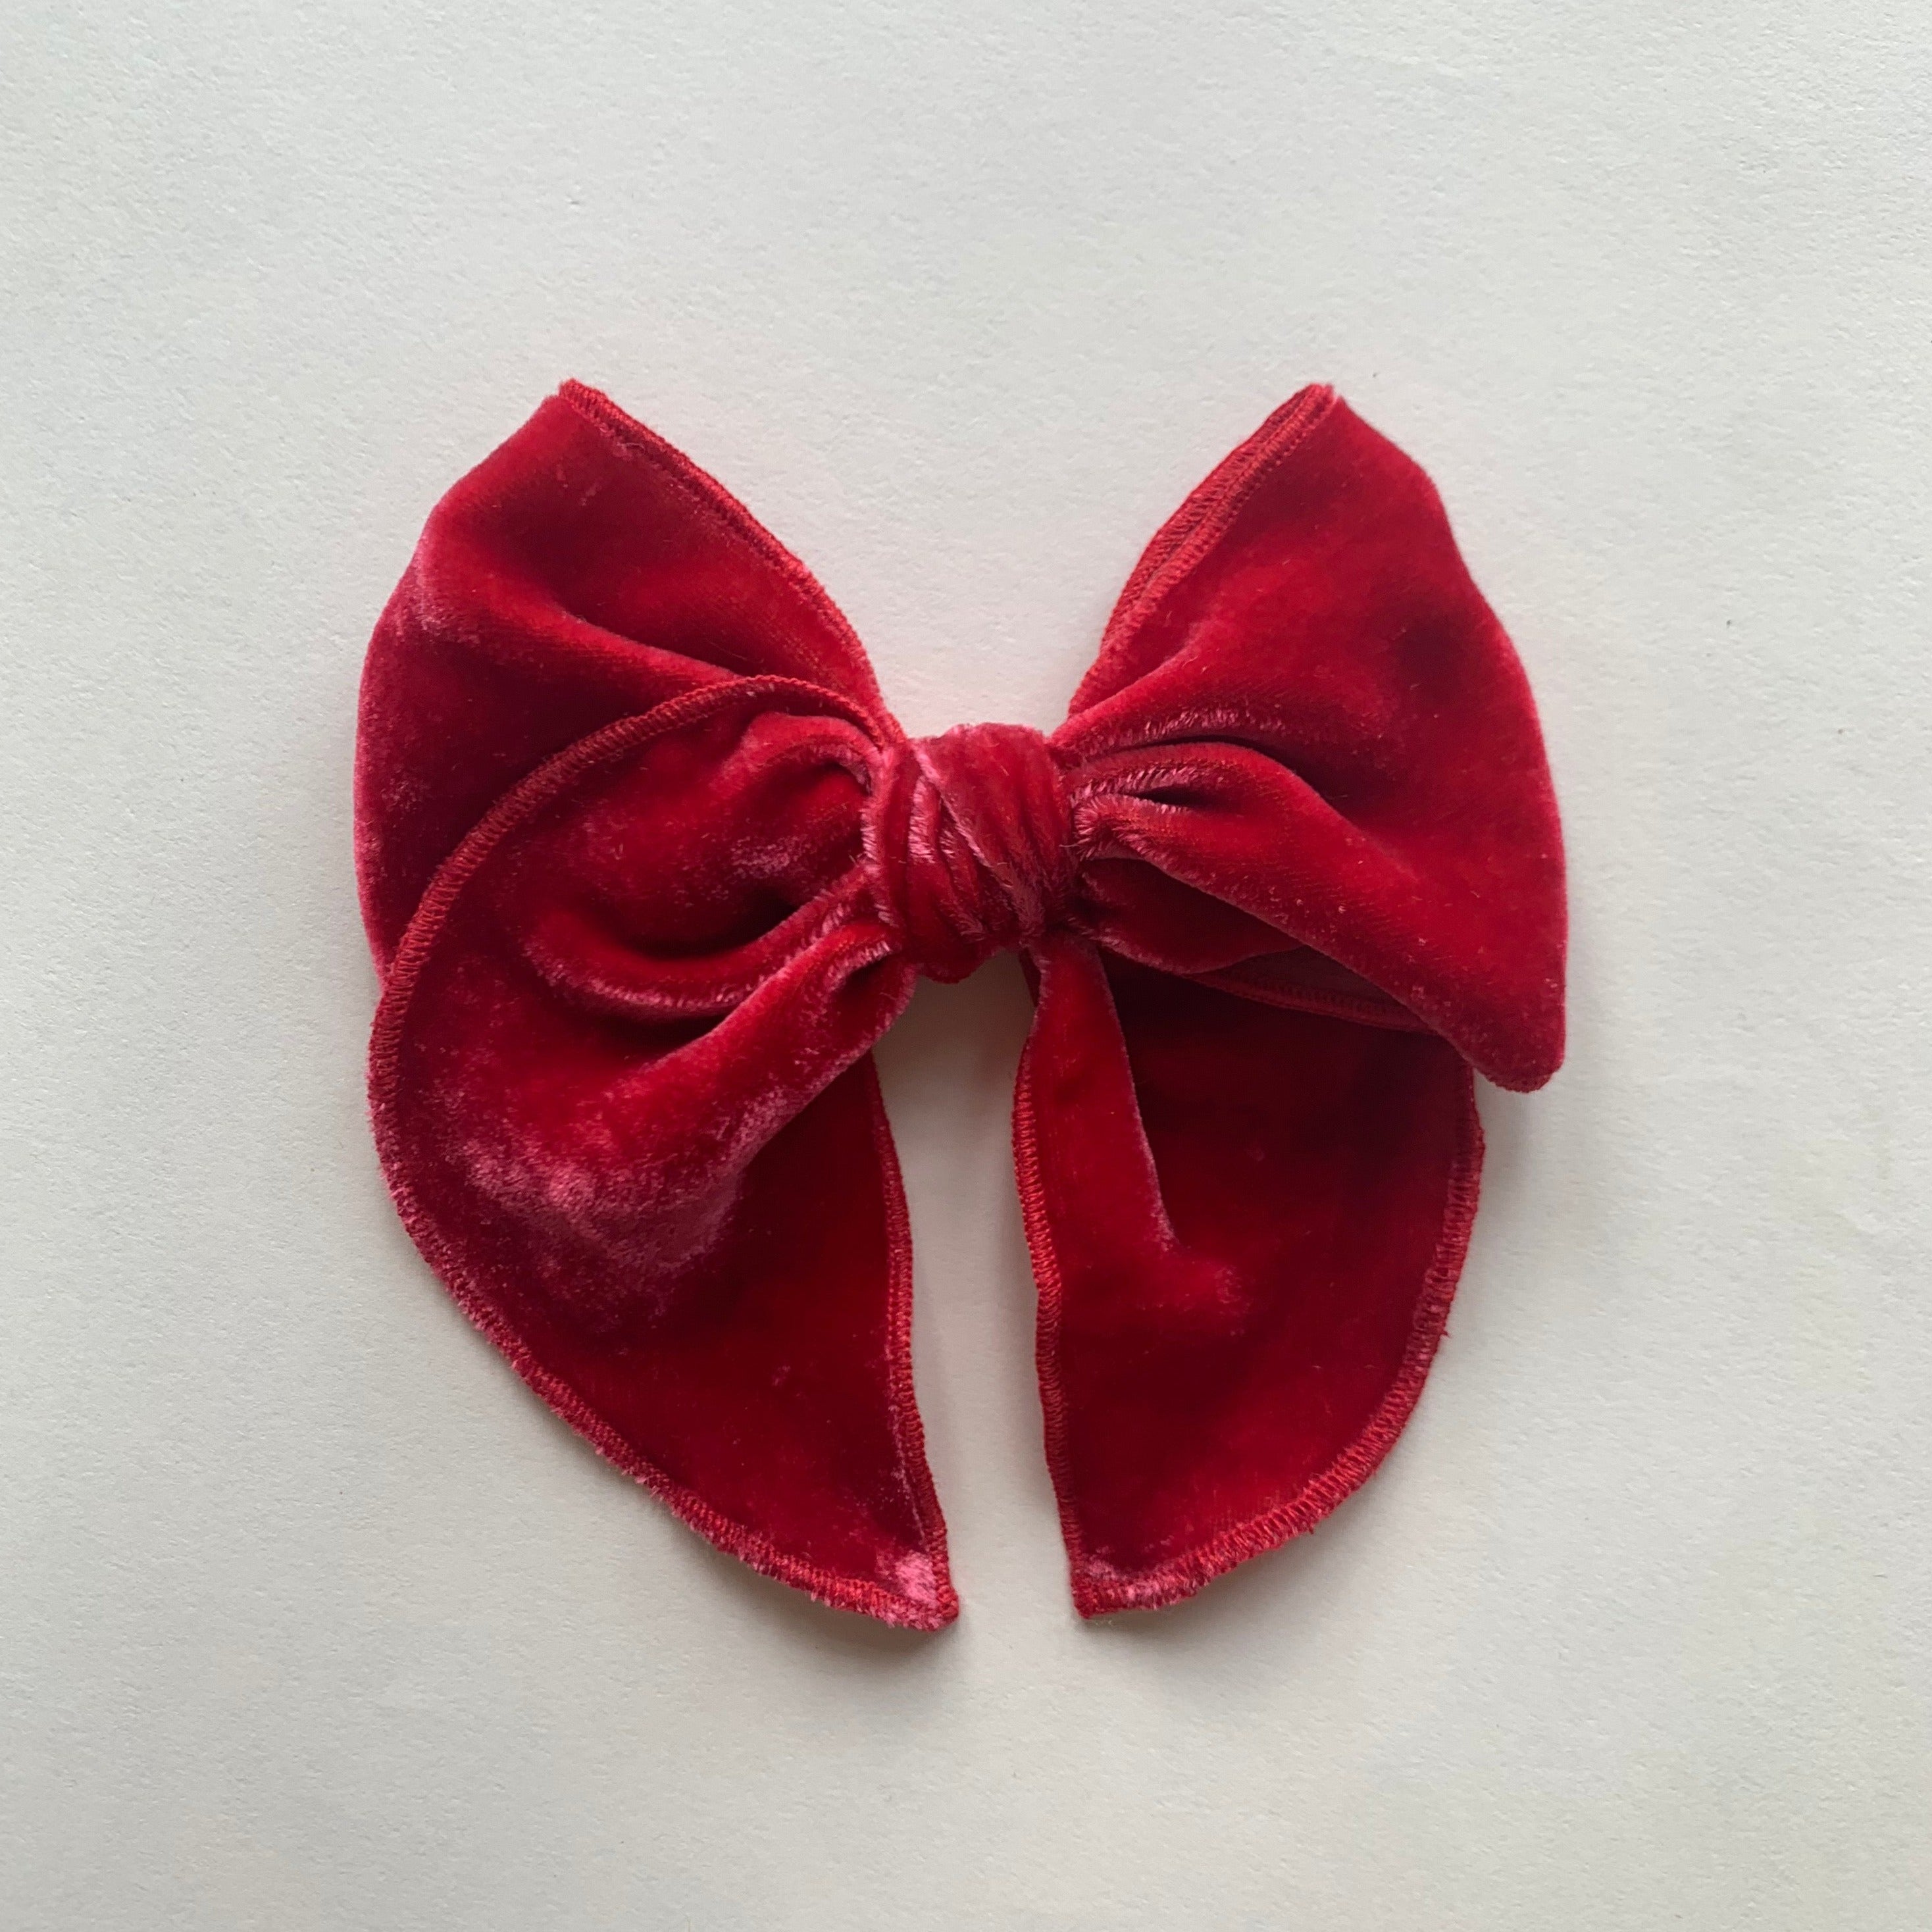 Sailor Bow // Red velvet